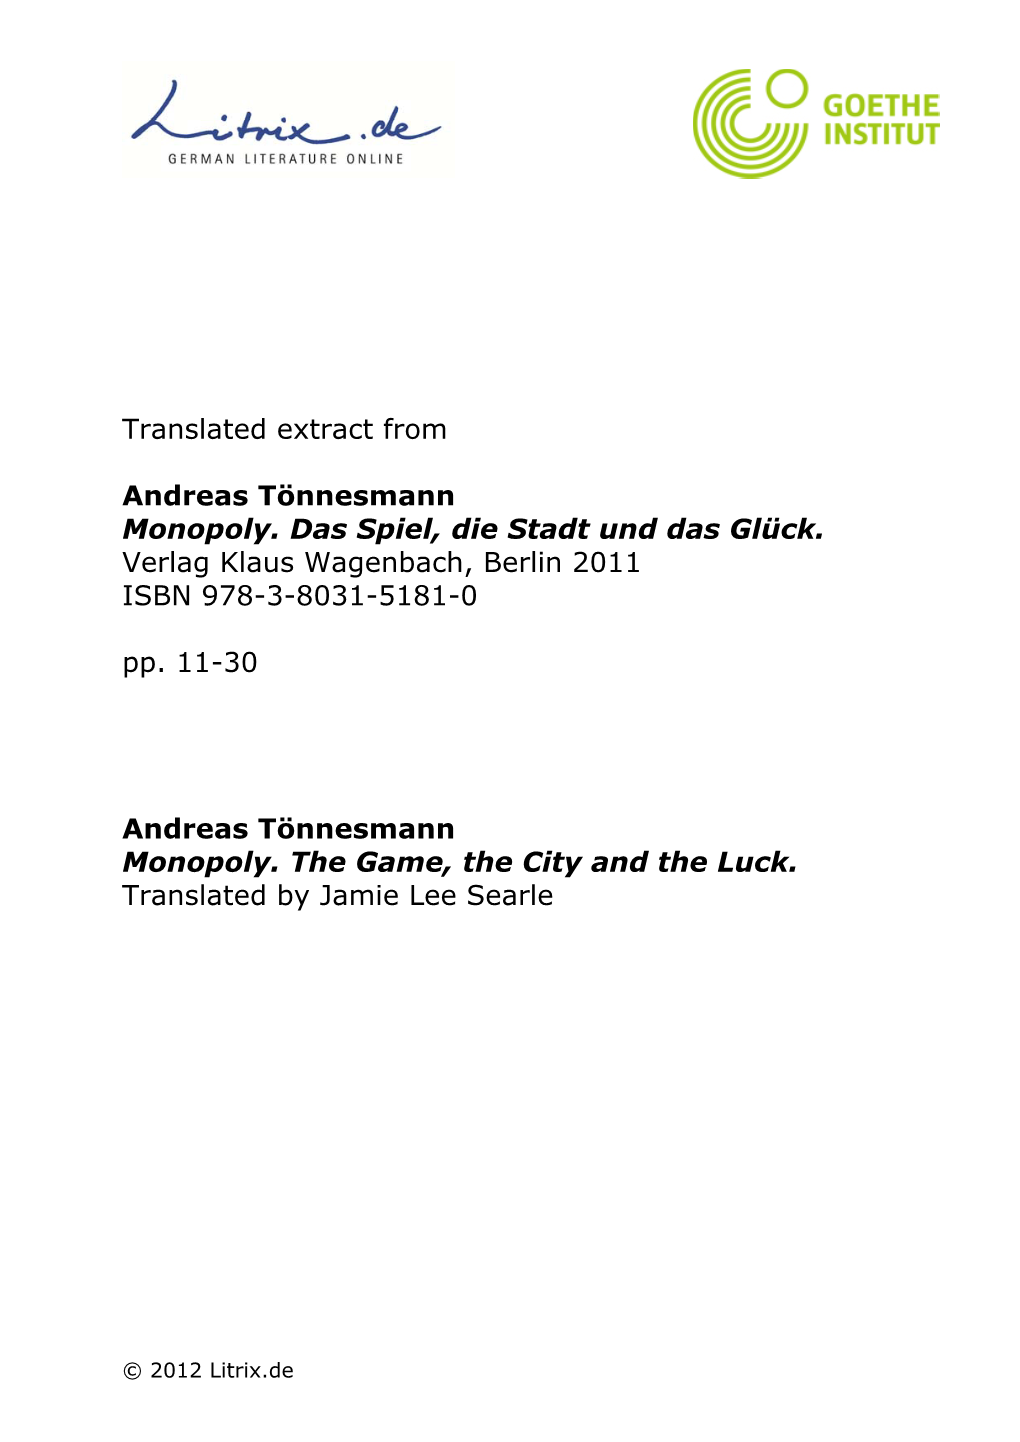 Translated Extract from Andreas Tönnesmann Monopoly. Das Spiel, Die Stadt Und Das Glück. Verlag Klaus Wagenbach, Berlin 2011 I